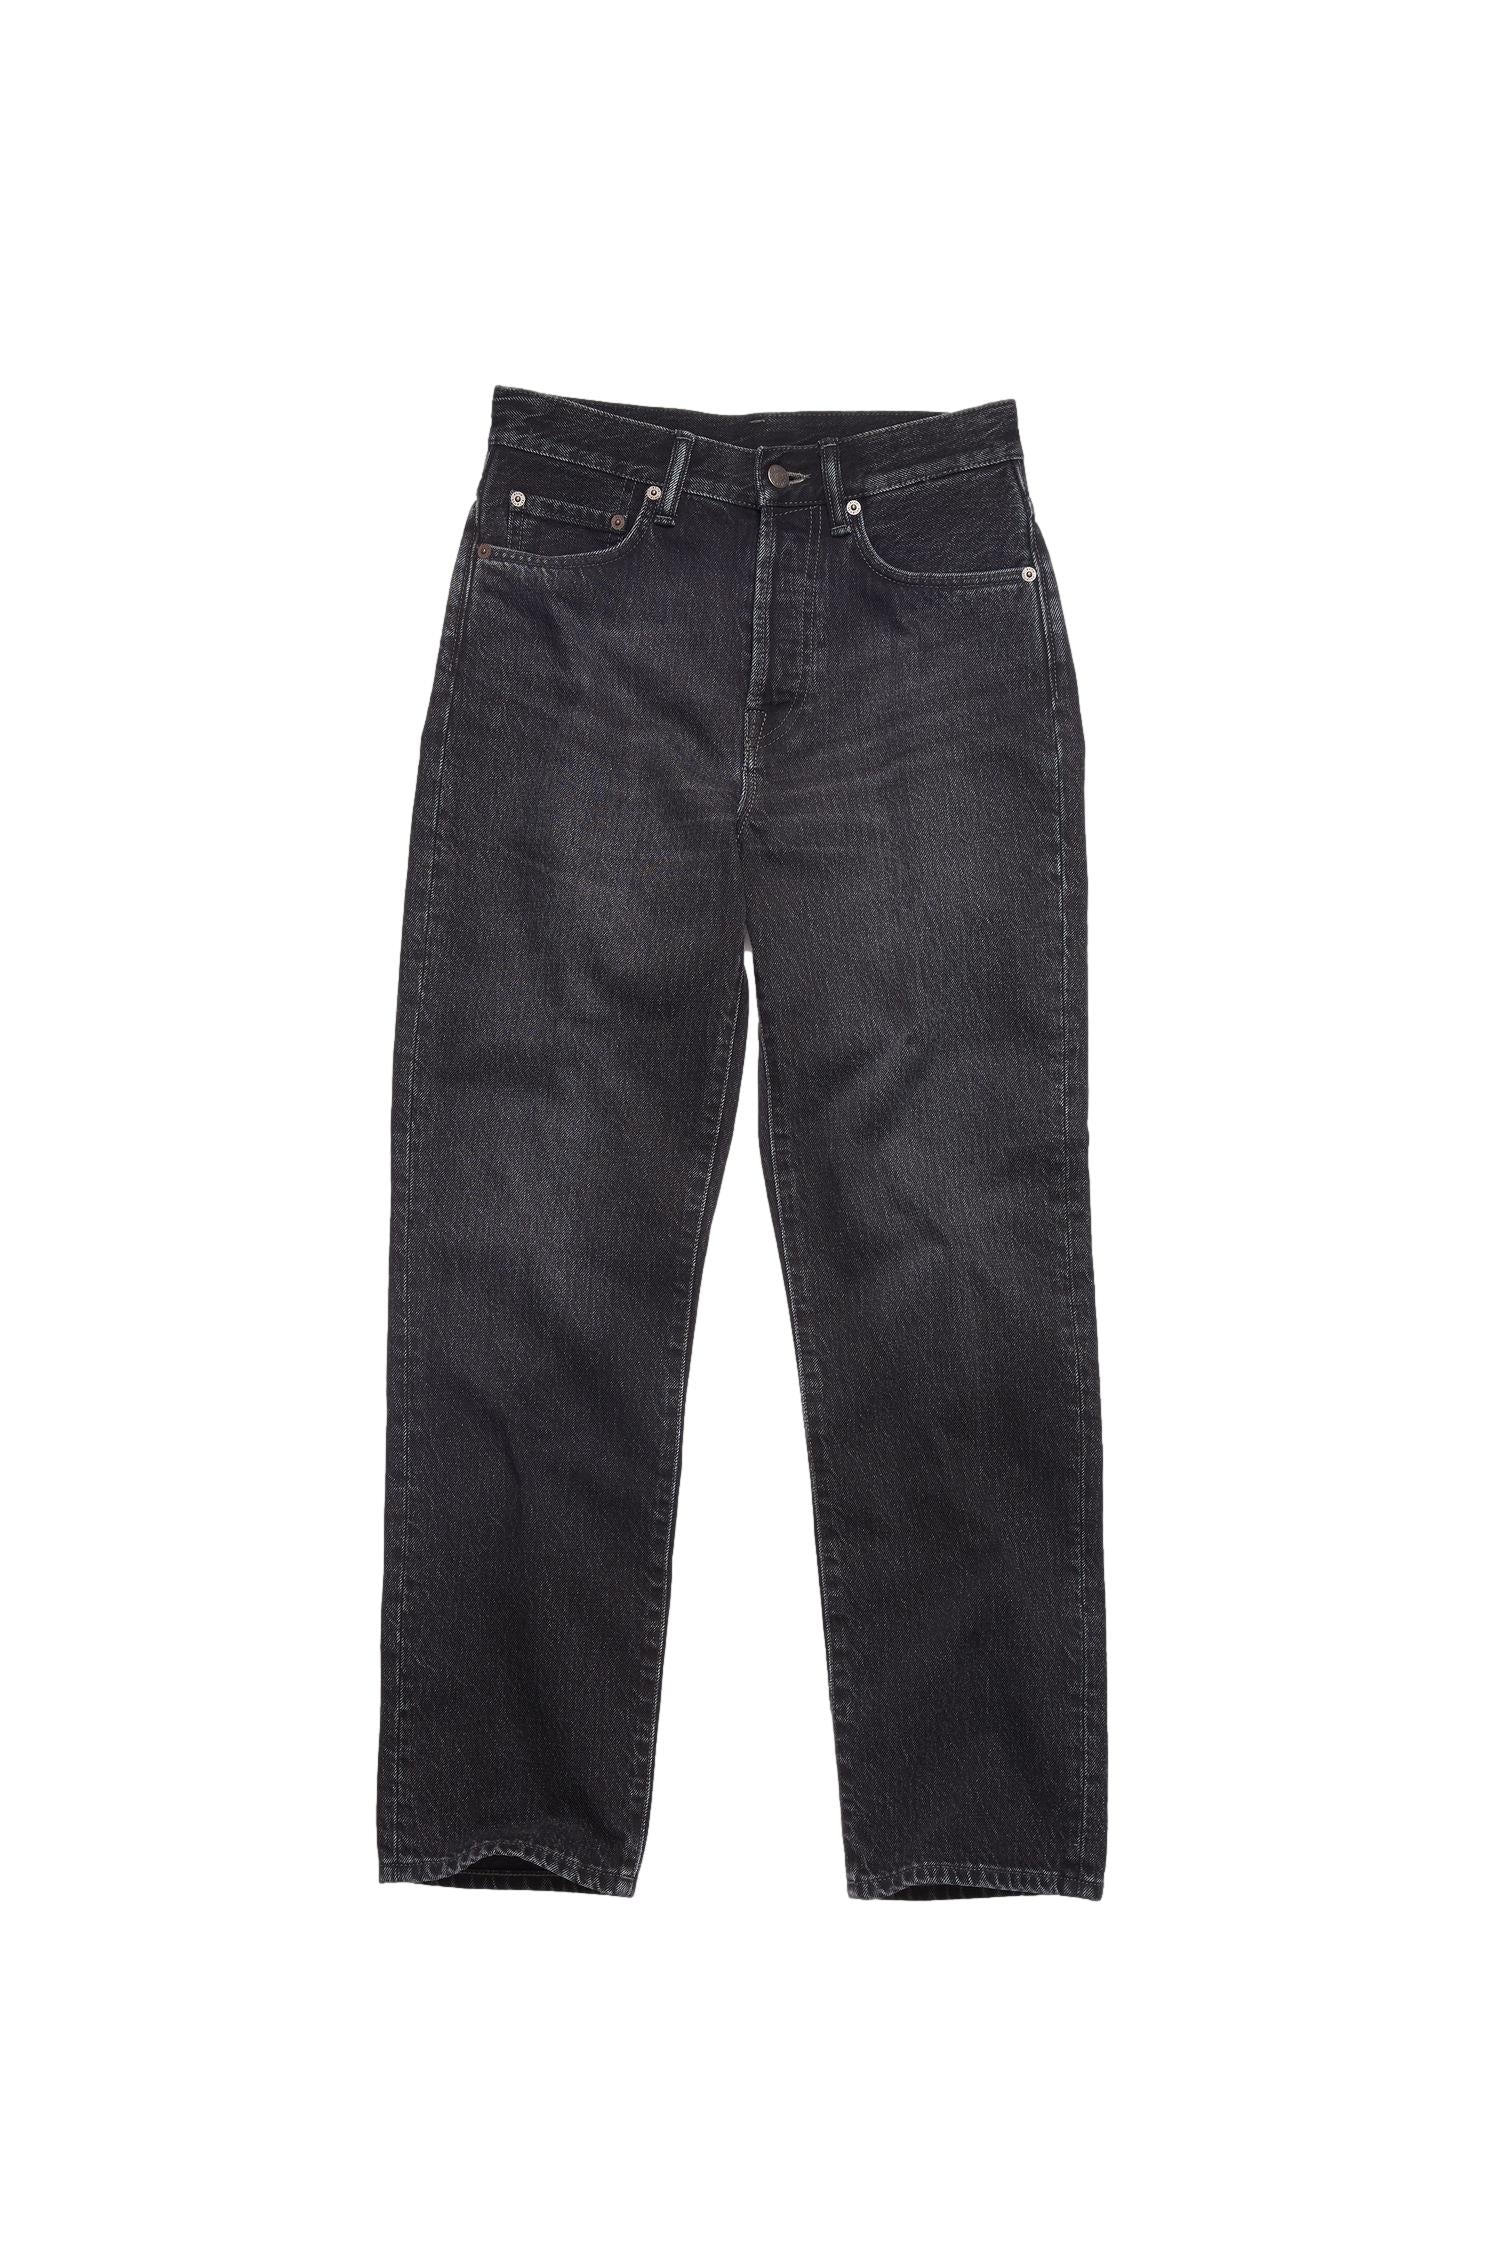 Acne Mece Vintage Black Jeans Vasket Sort - [shop.name]